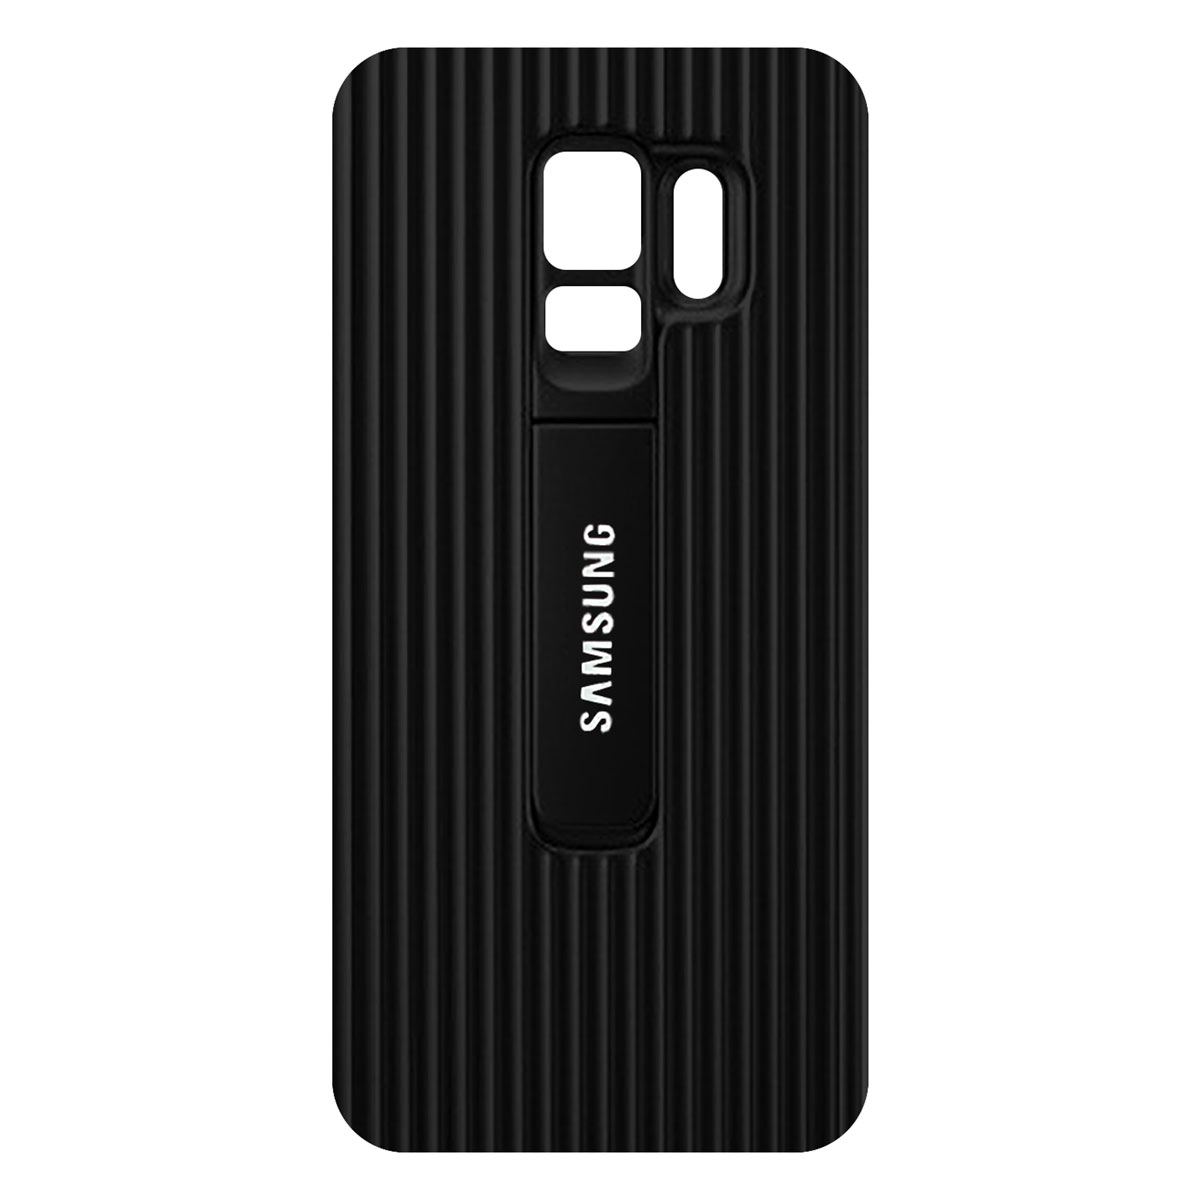 کاور سامسونگ کد SA005 مناسب برای گوشی موبایل سامسونگ Galaxy S9